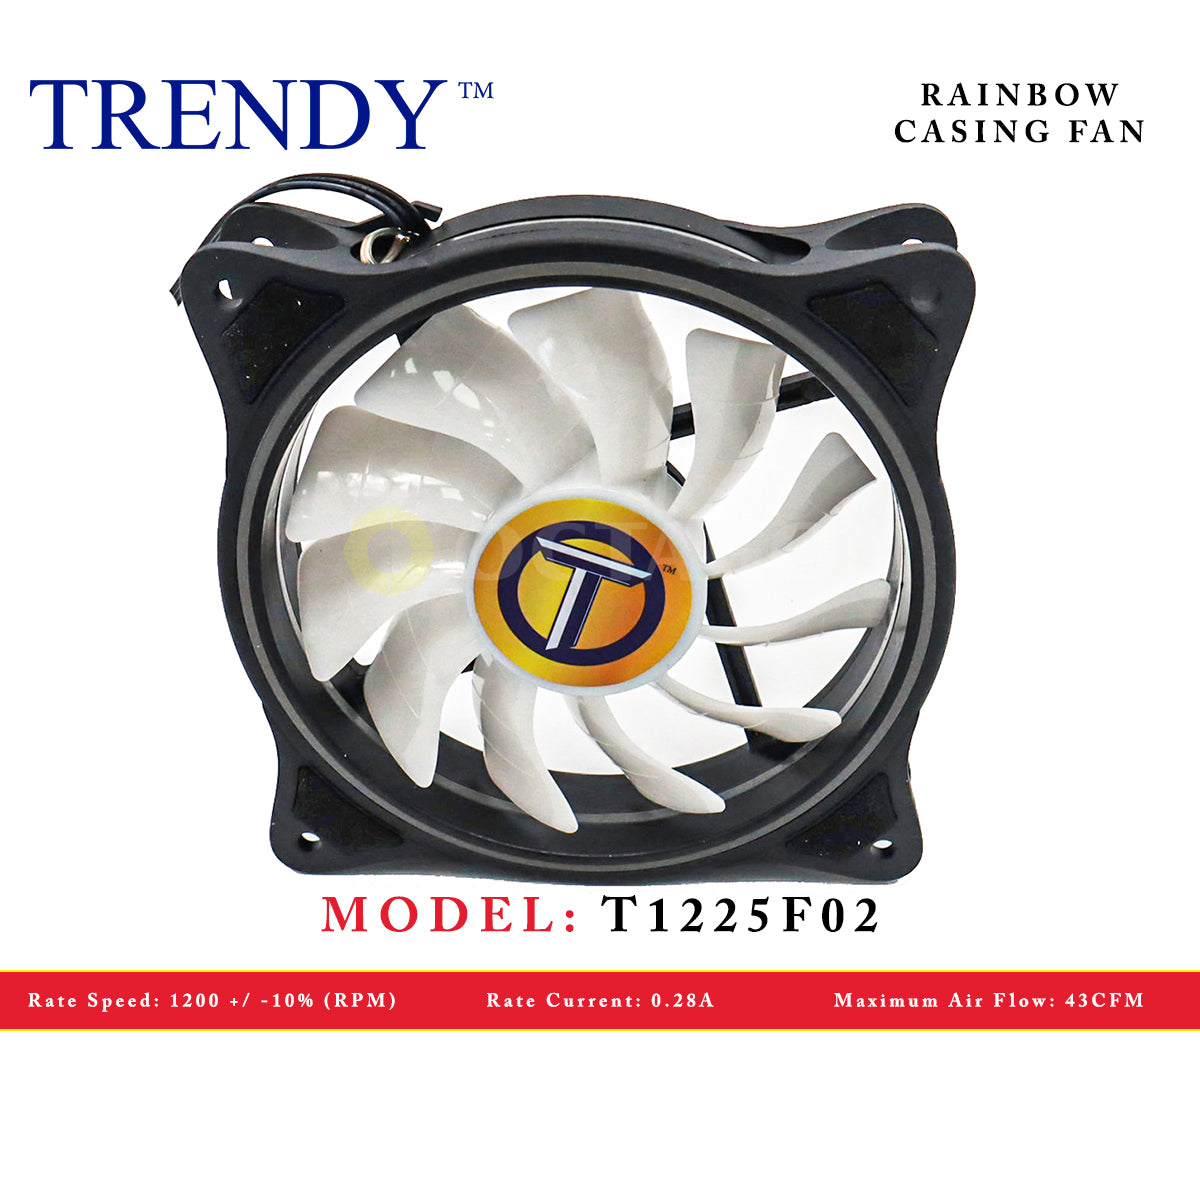 TRENDY T1225F02 RAINBOW CASING FAN